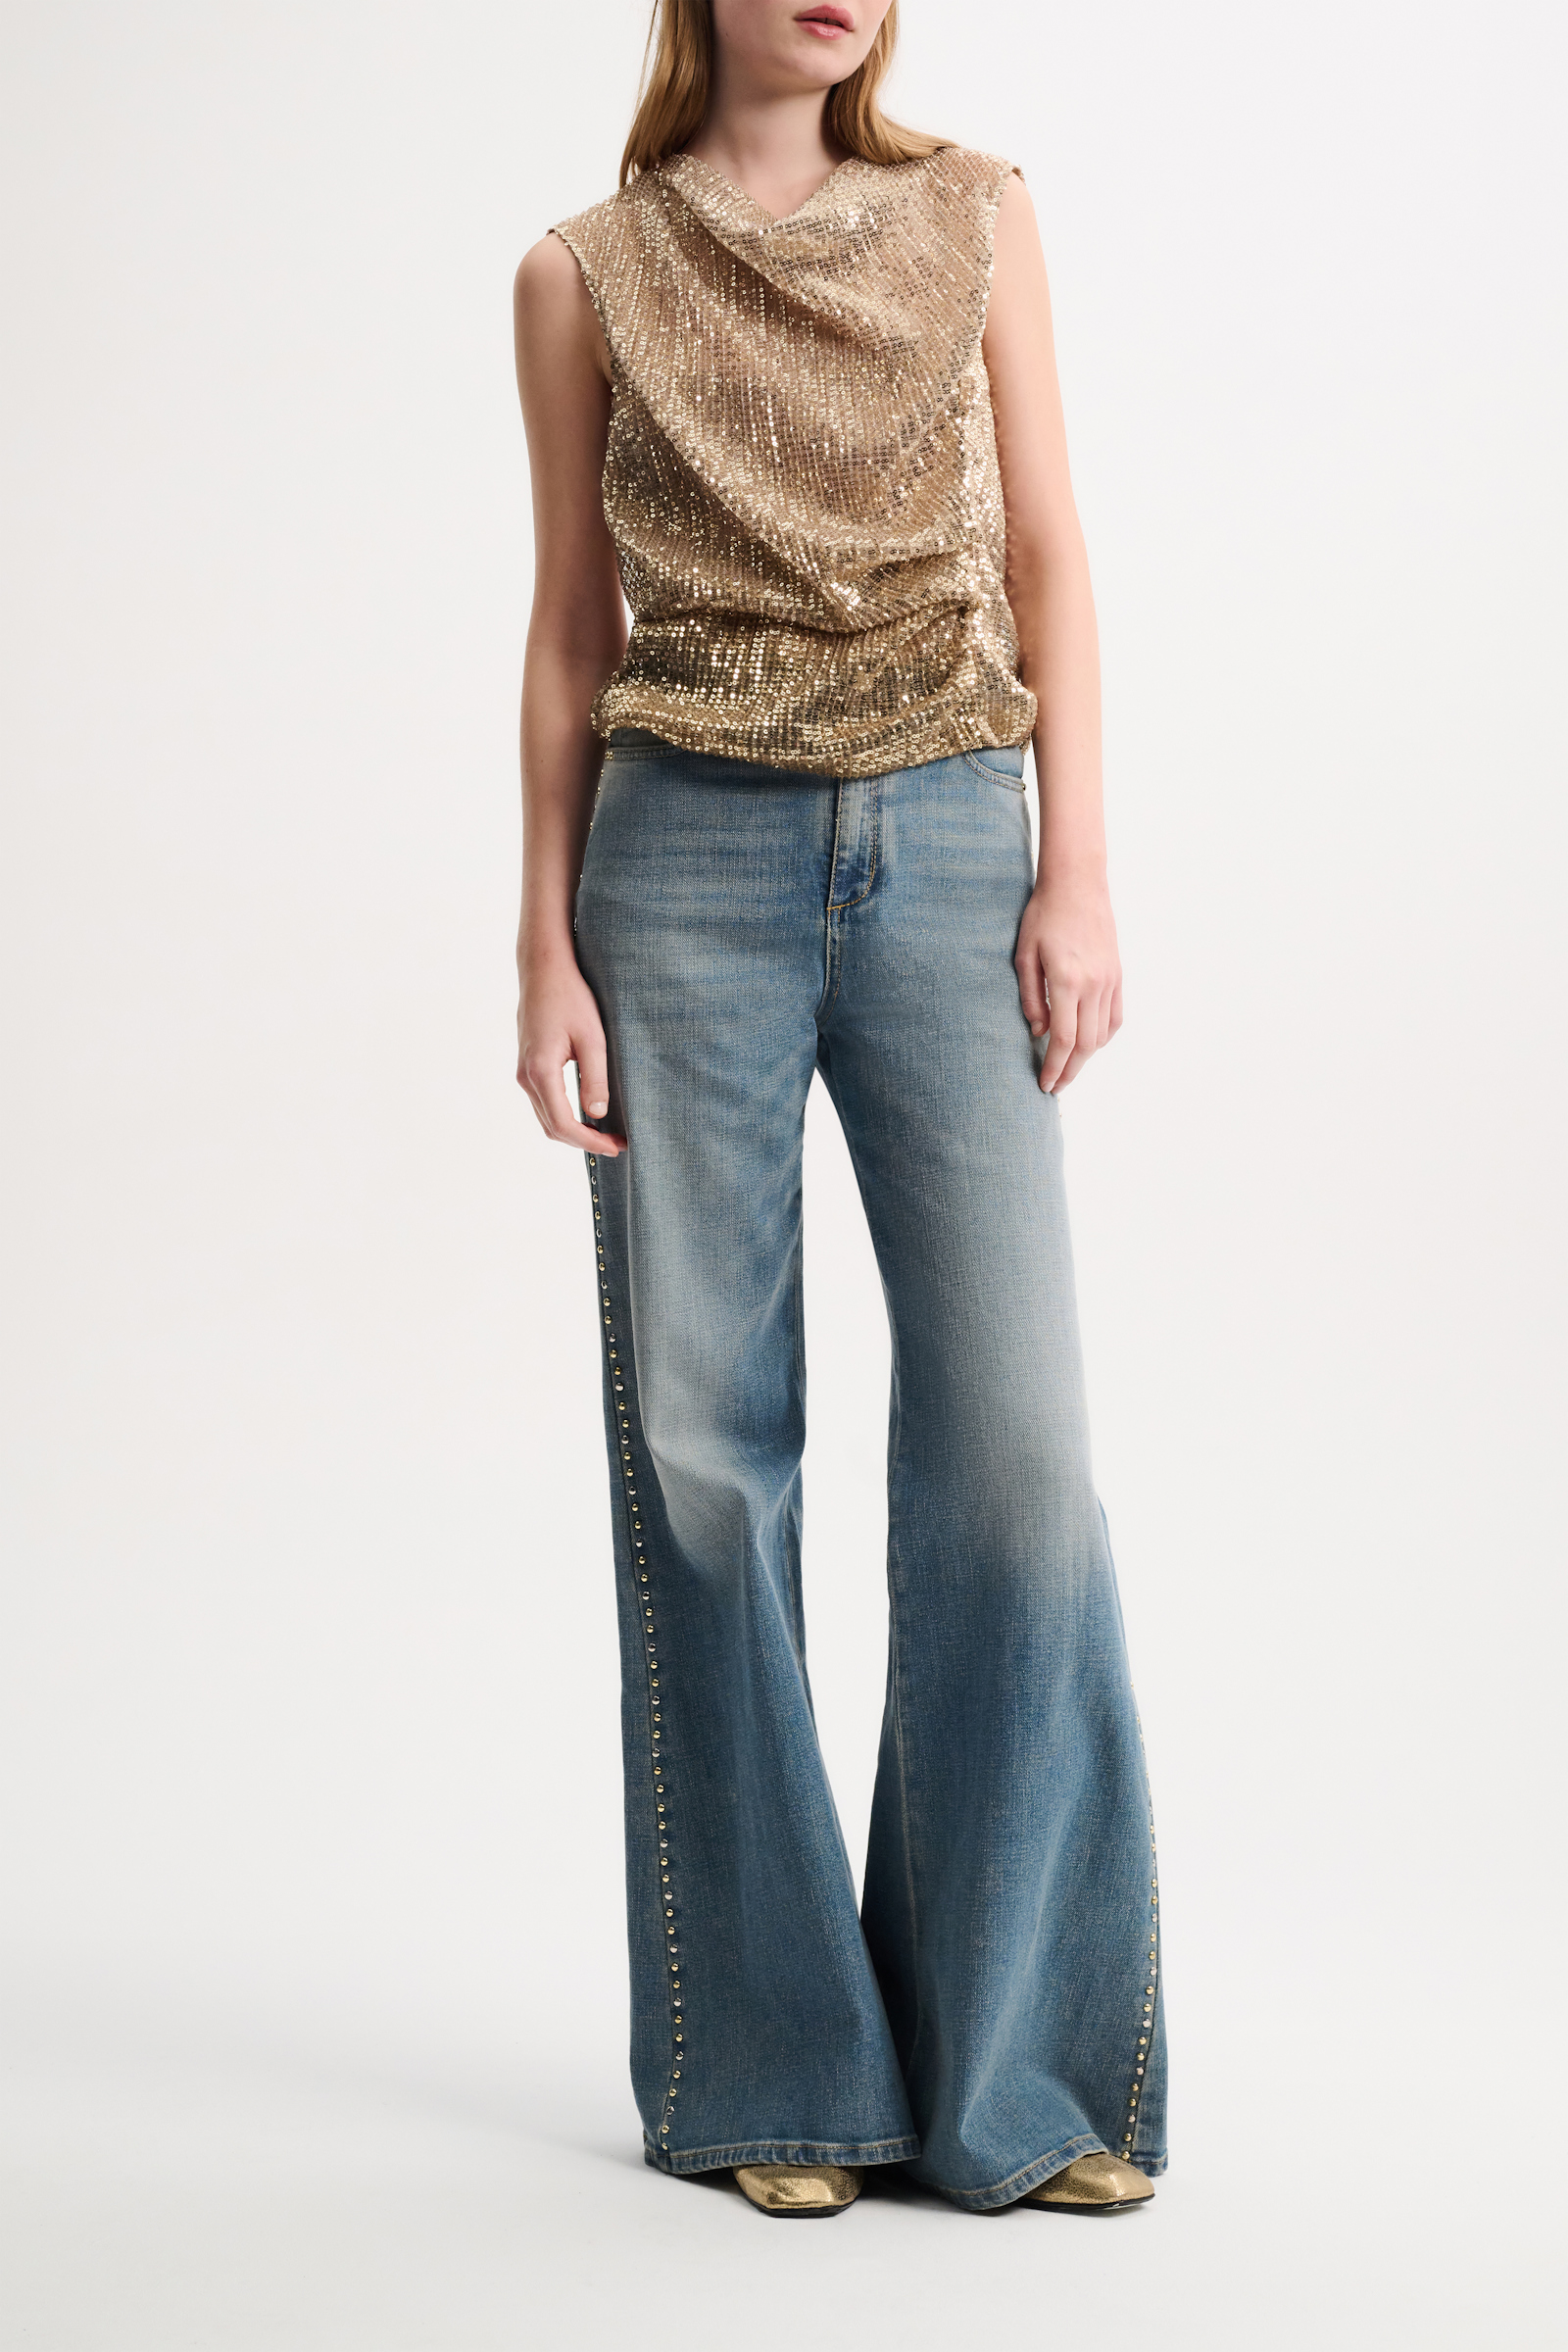 Dorothee Schumacher Jeans mit Ziersteinen dark denim